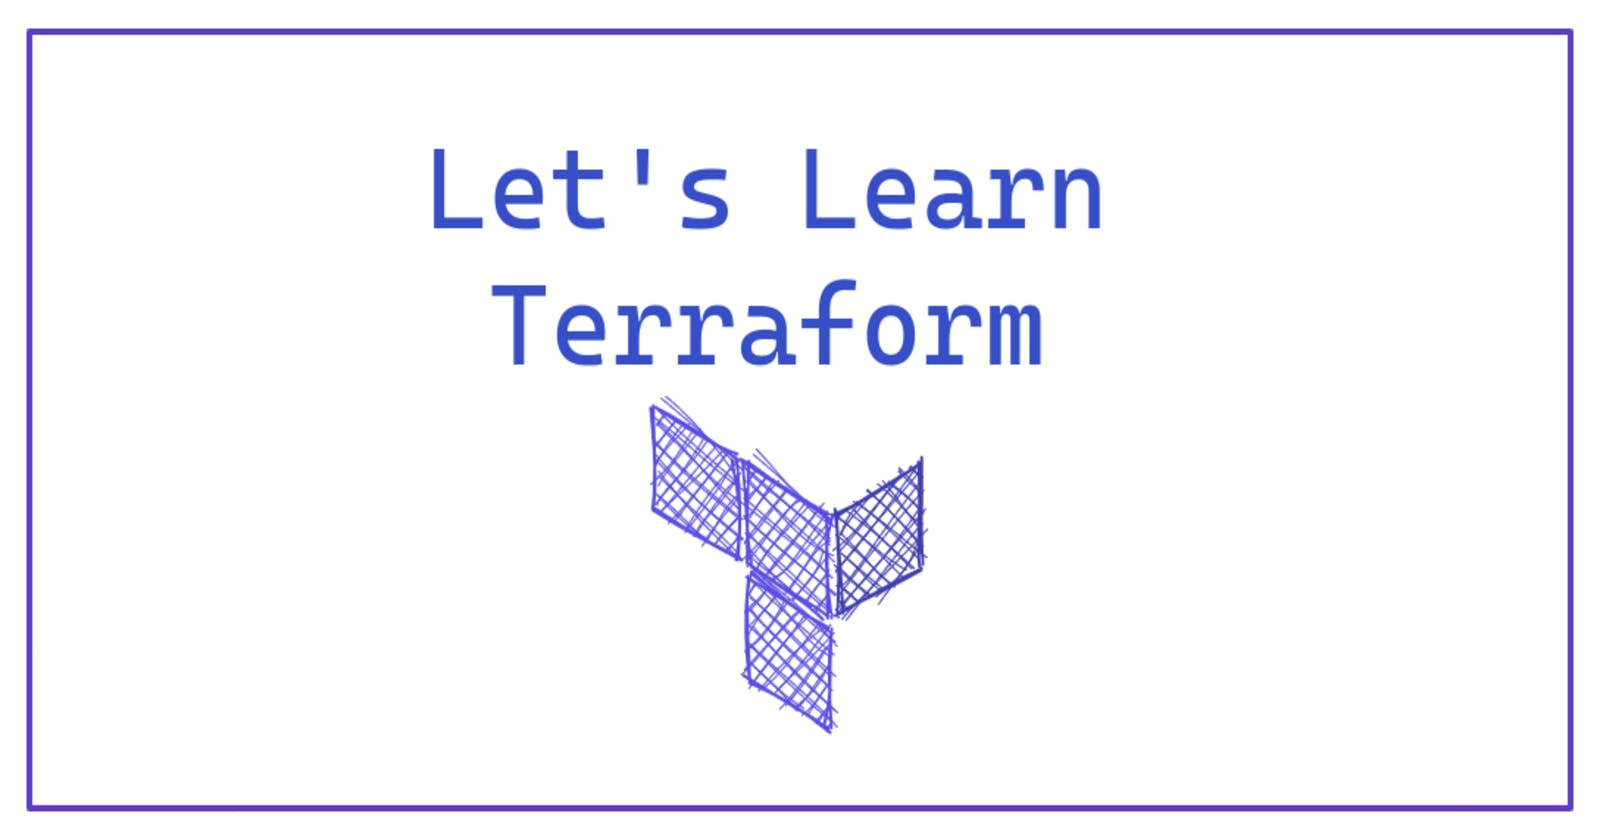 Let's Learn: Terraform